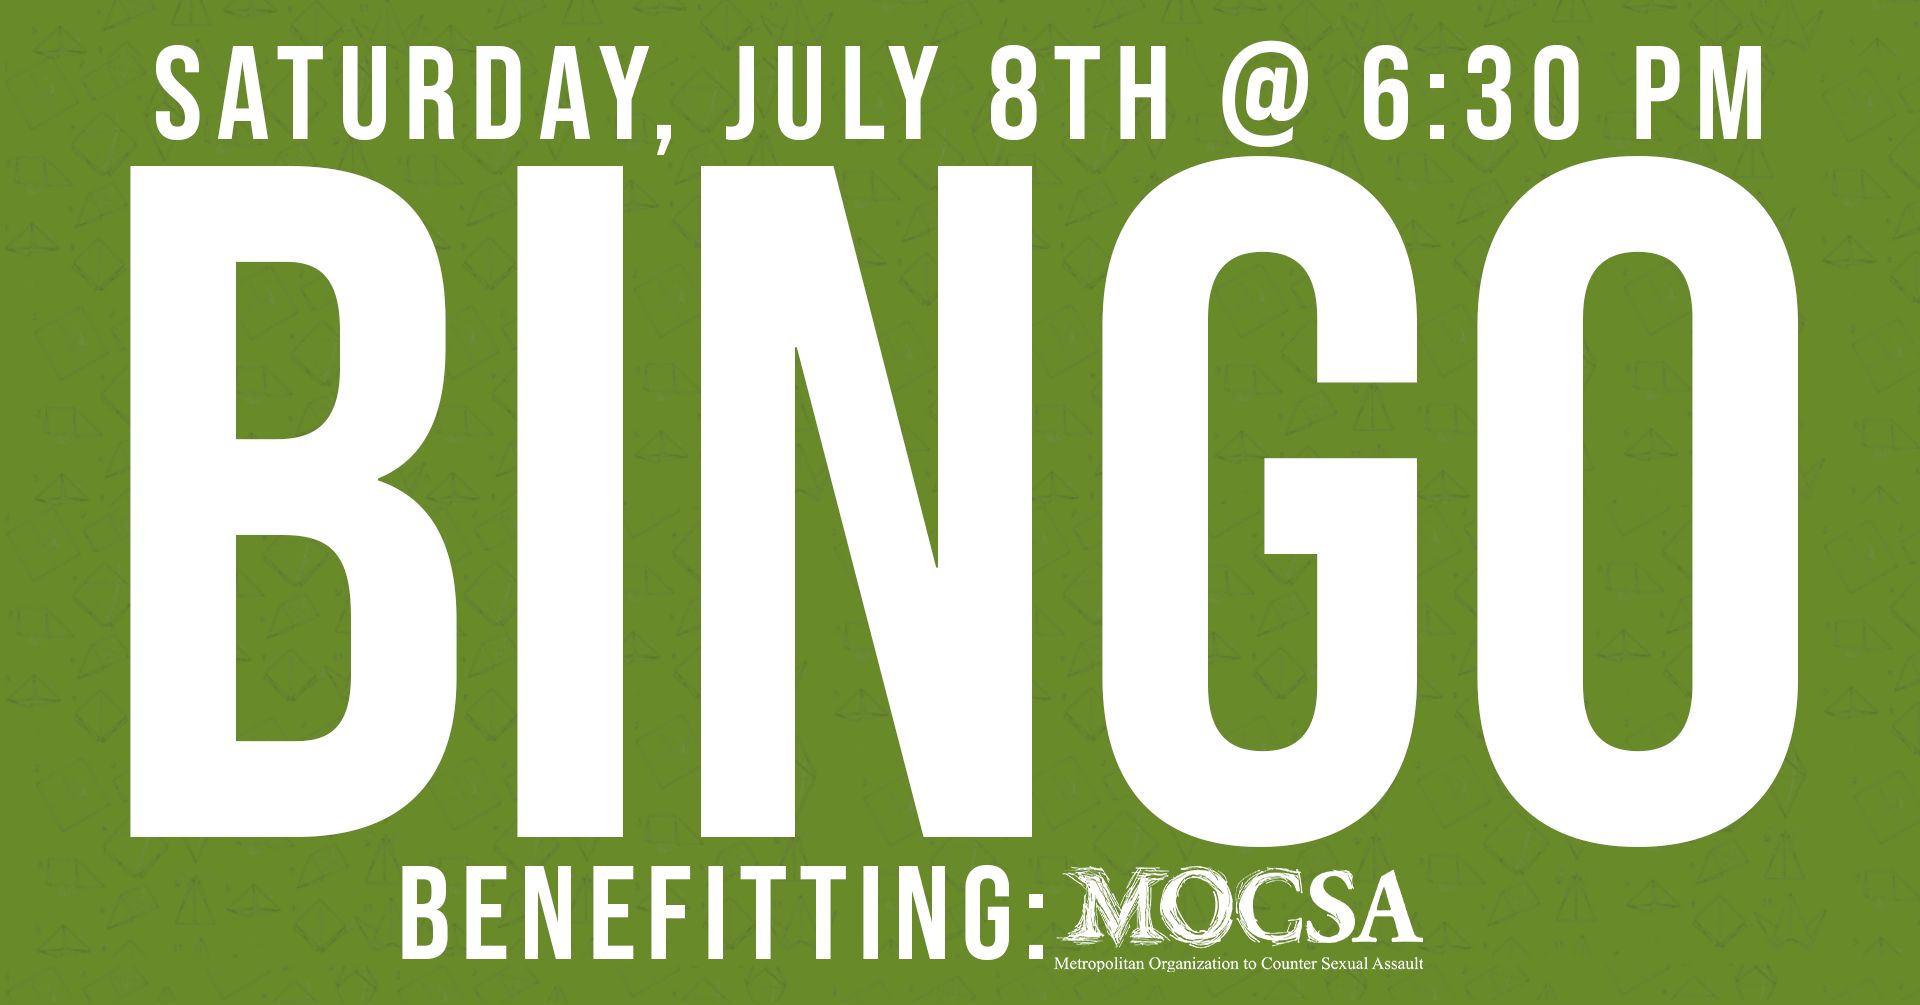 Bingo at Crane Brewing Company benefiting MOCSA Saturday July 8 at 6:30 pm